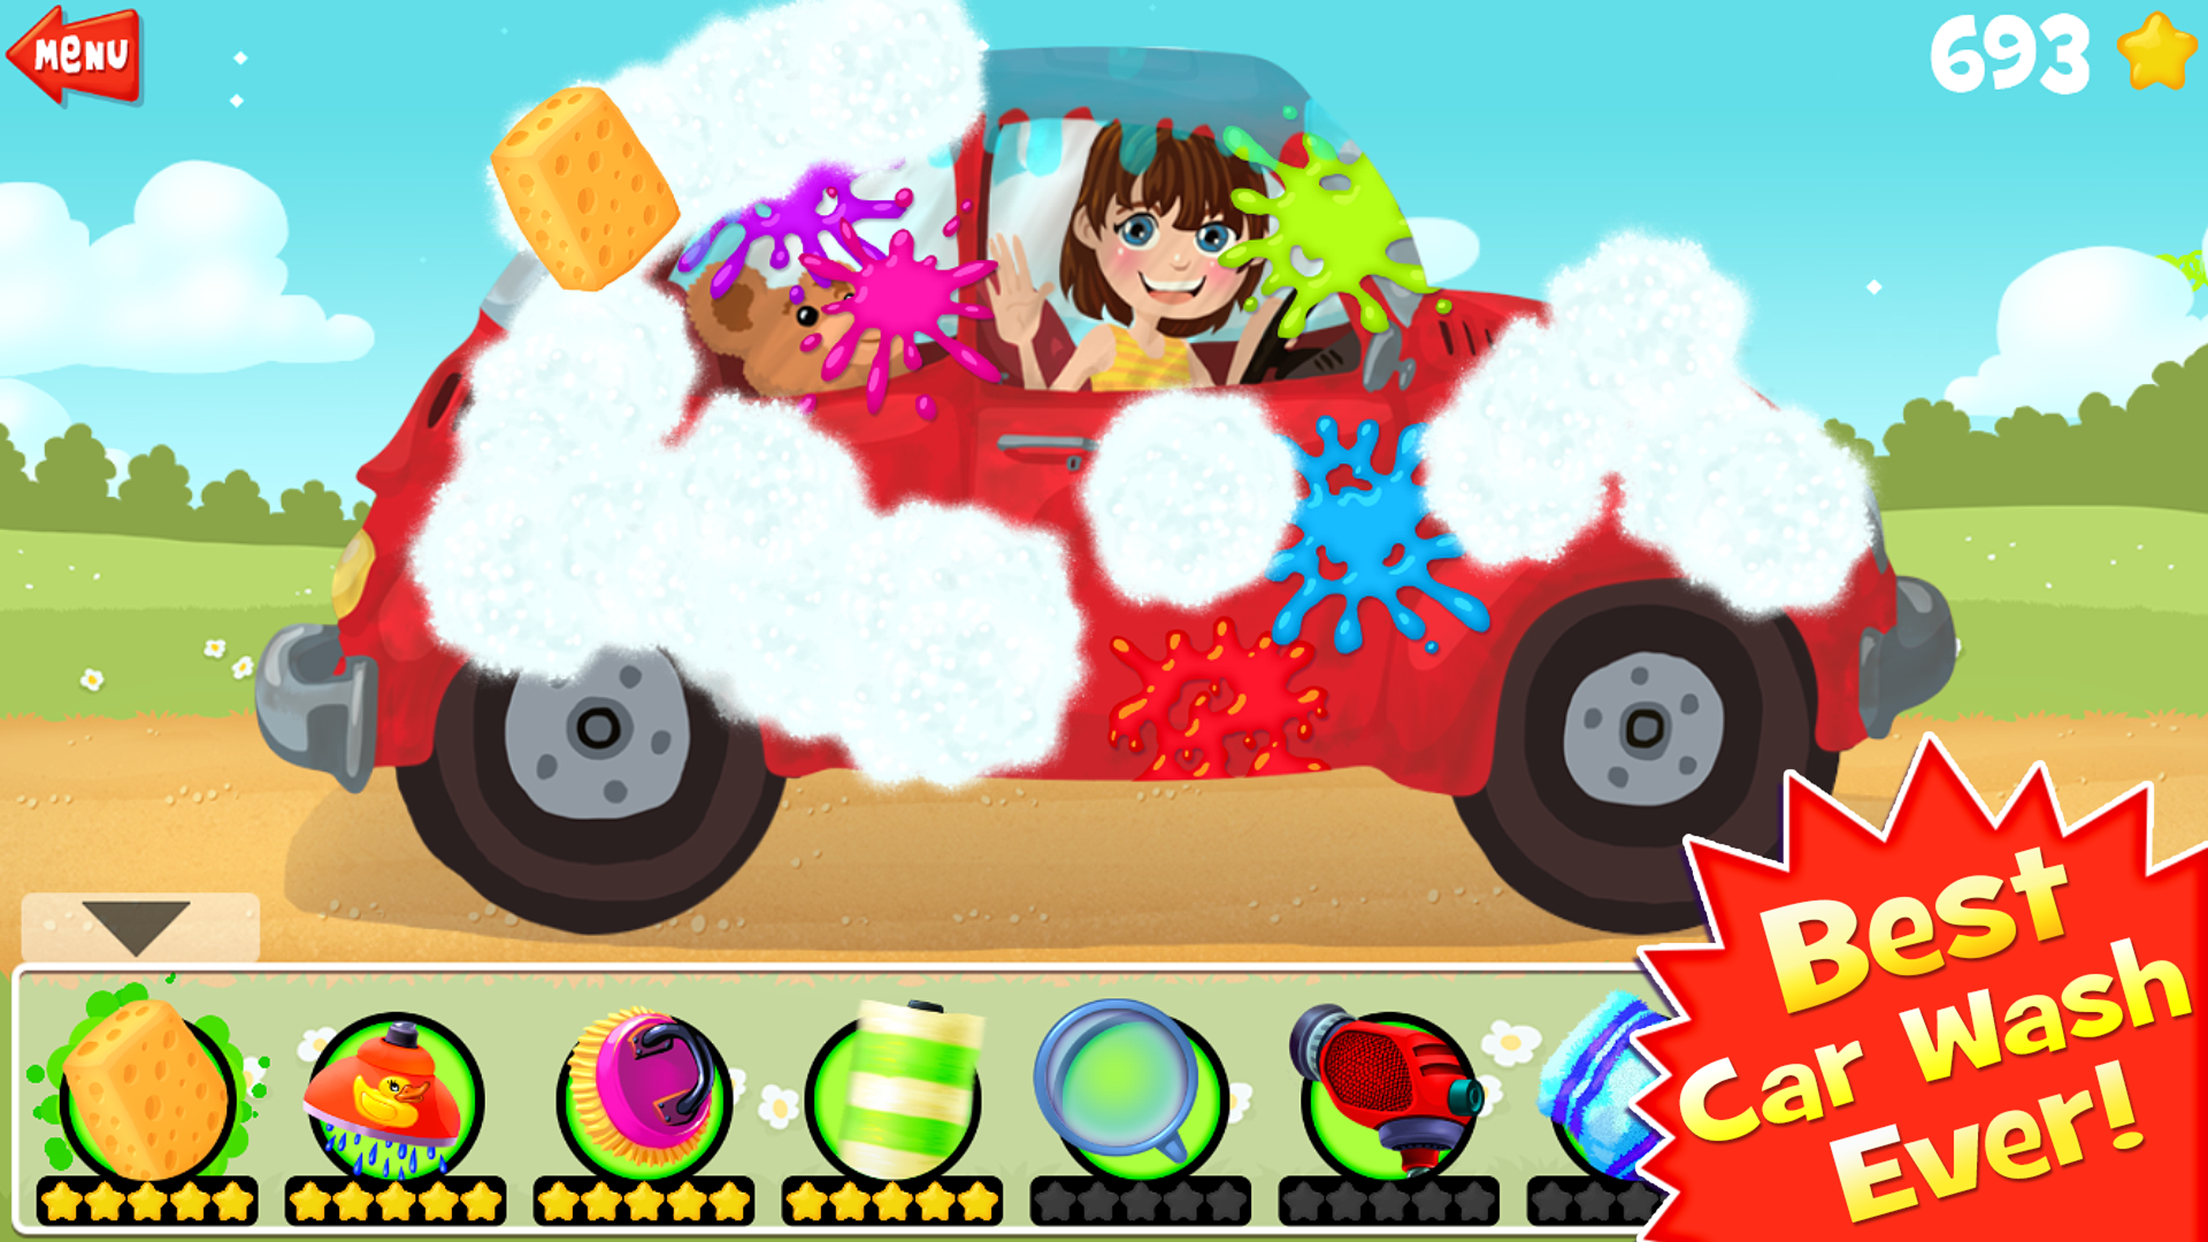 Screenshot 1 of Amazing Car Wash Game Para sa Mga Bata 3.7